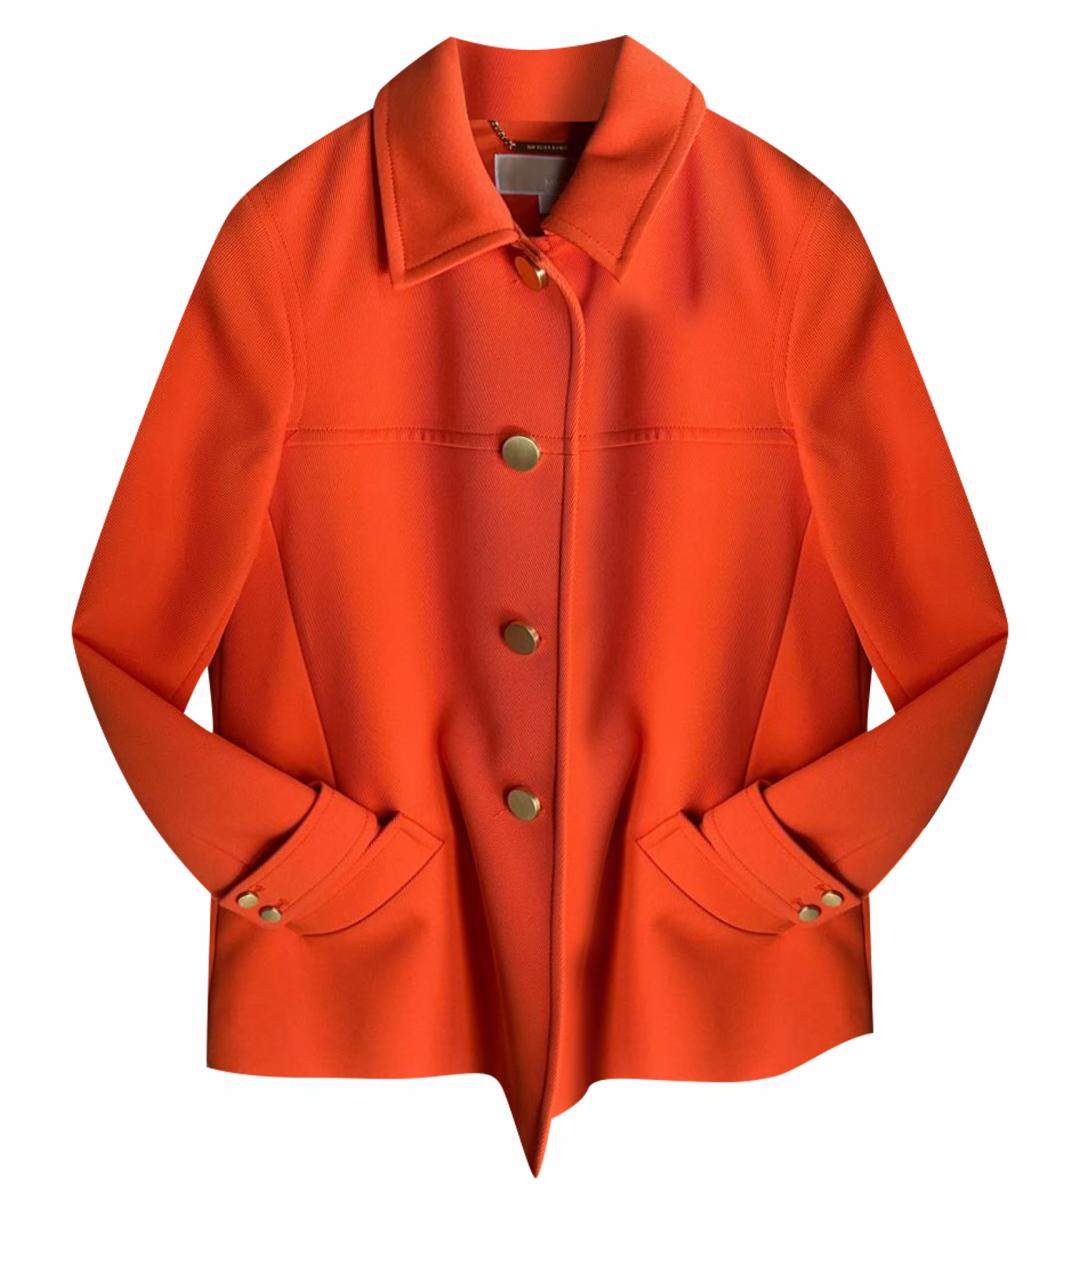 MICHAEL KORS Оранжевый хлопковый жакет/пиджак, фото 1